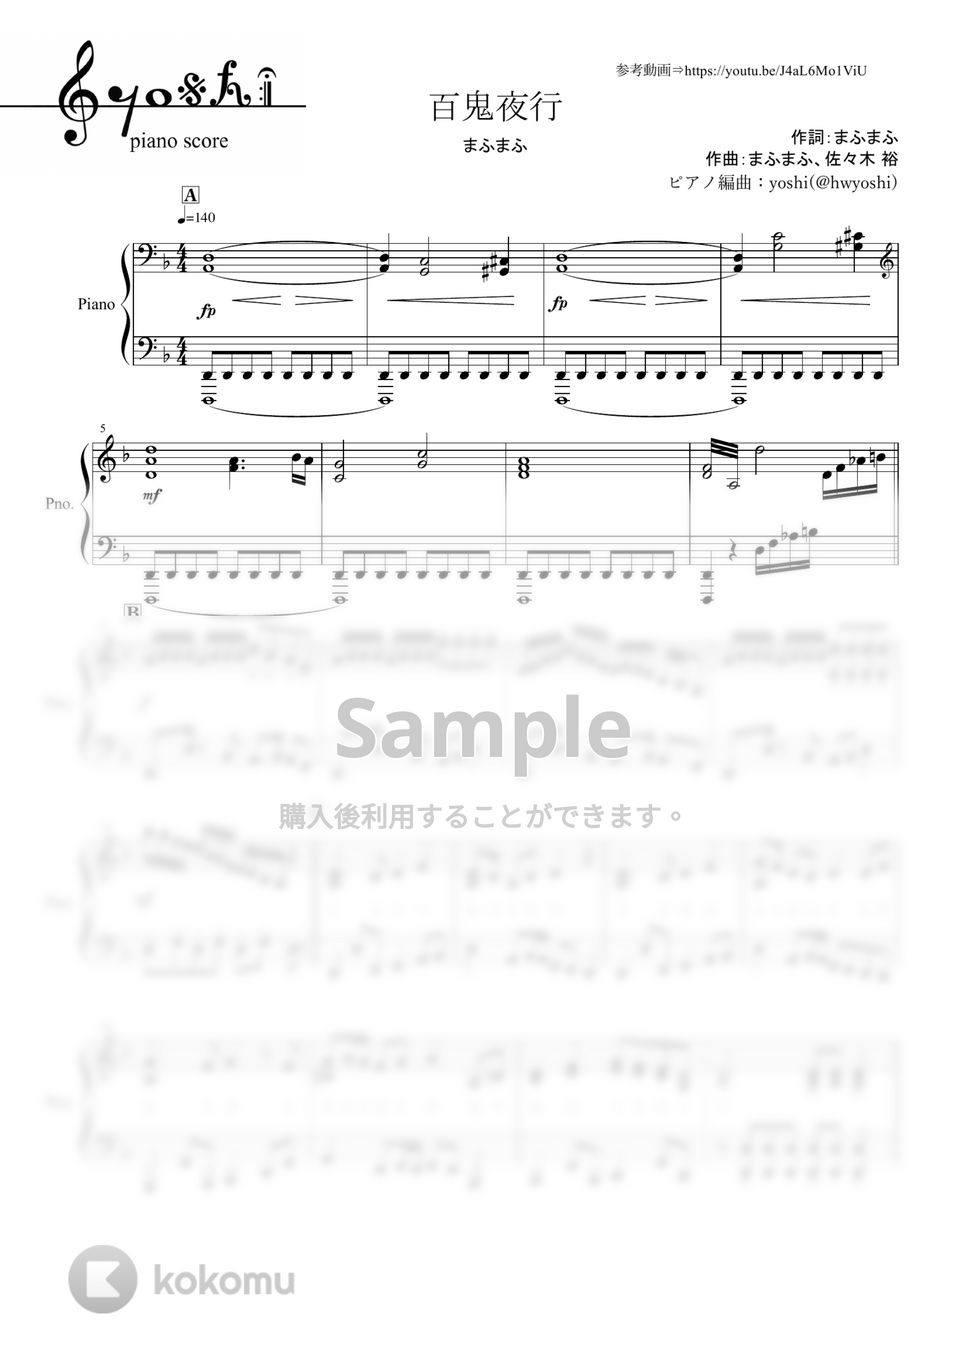 まふまふ - 百鬼夜行 (ピアノ楽譜/全7ページ) by yoshi